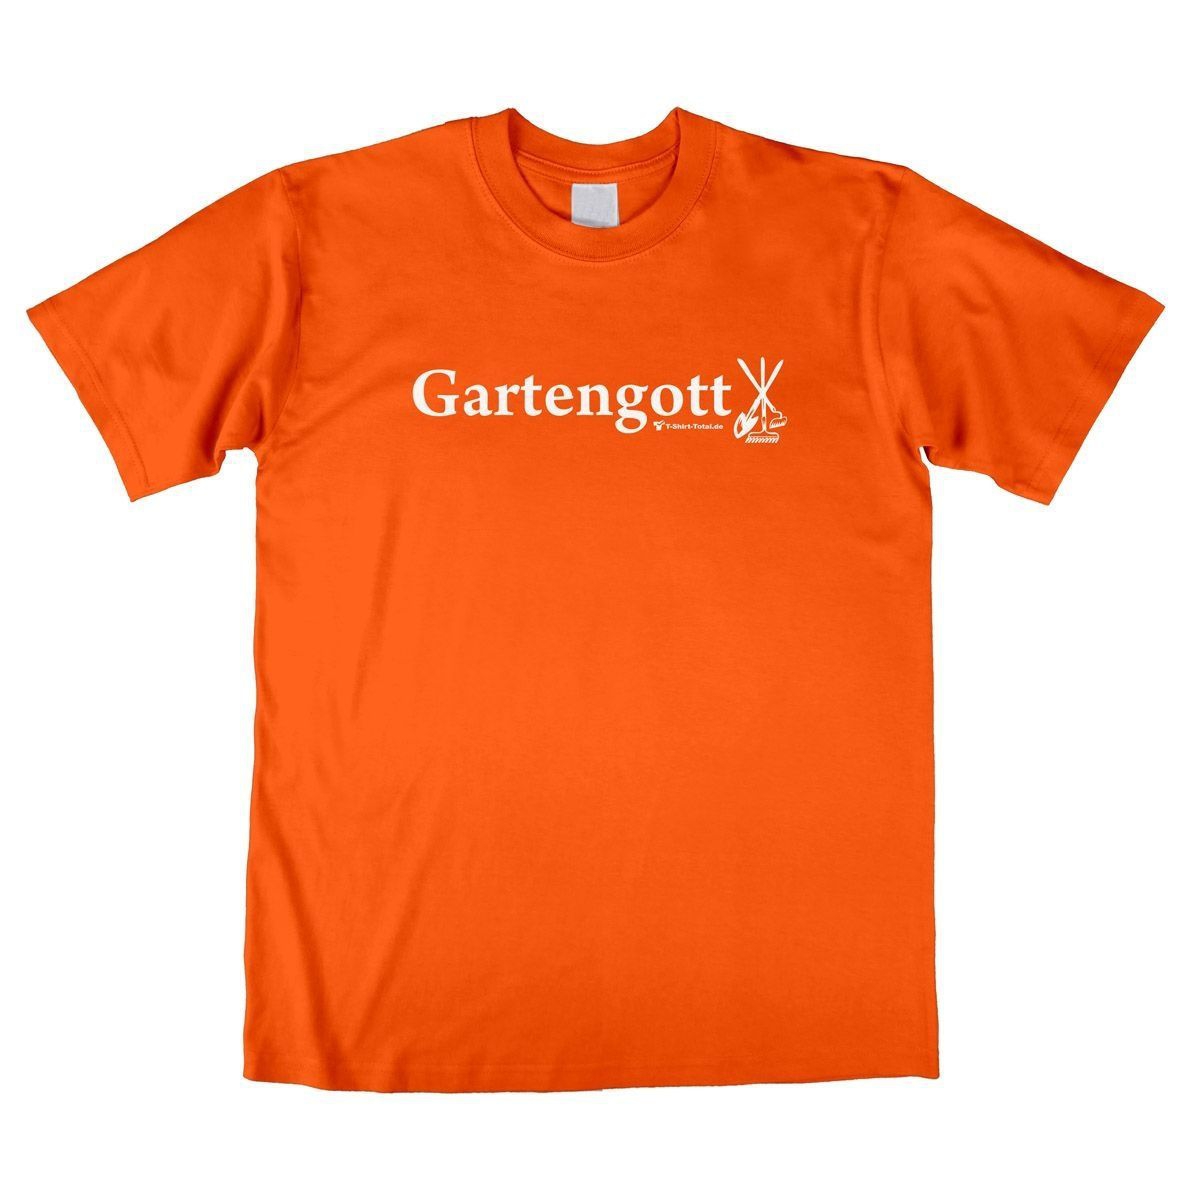 Gartengott Unisex T-Shirt orange Extra Large